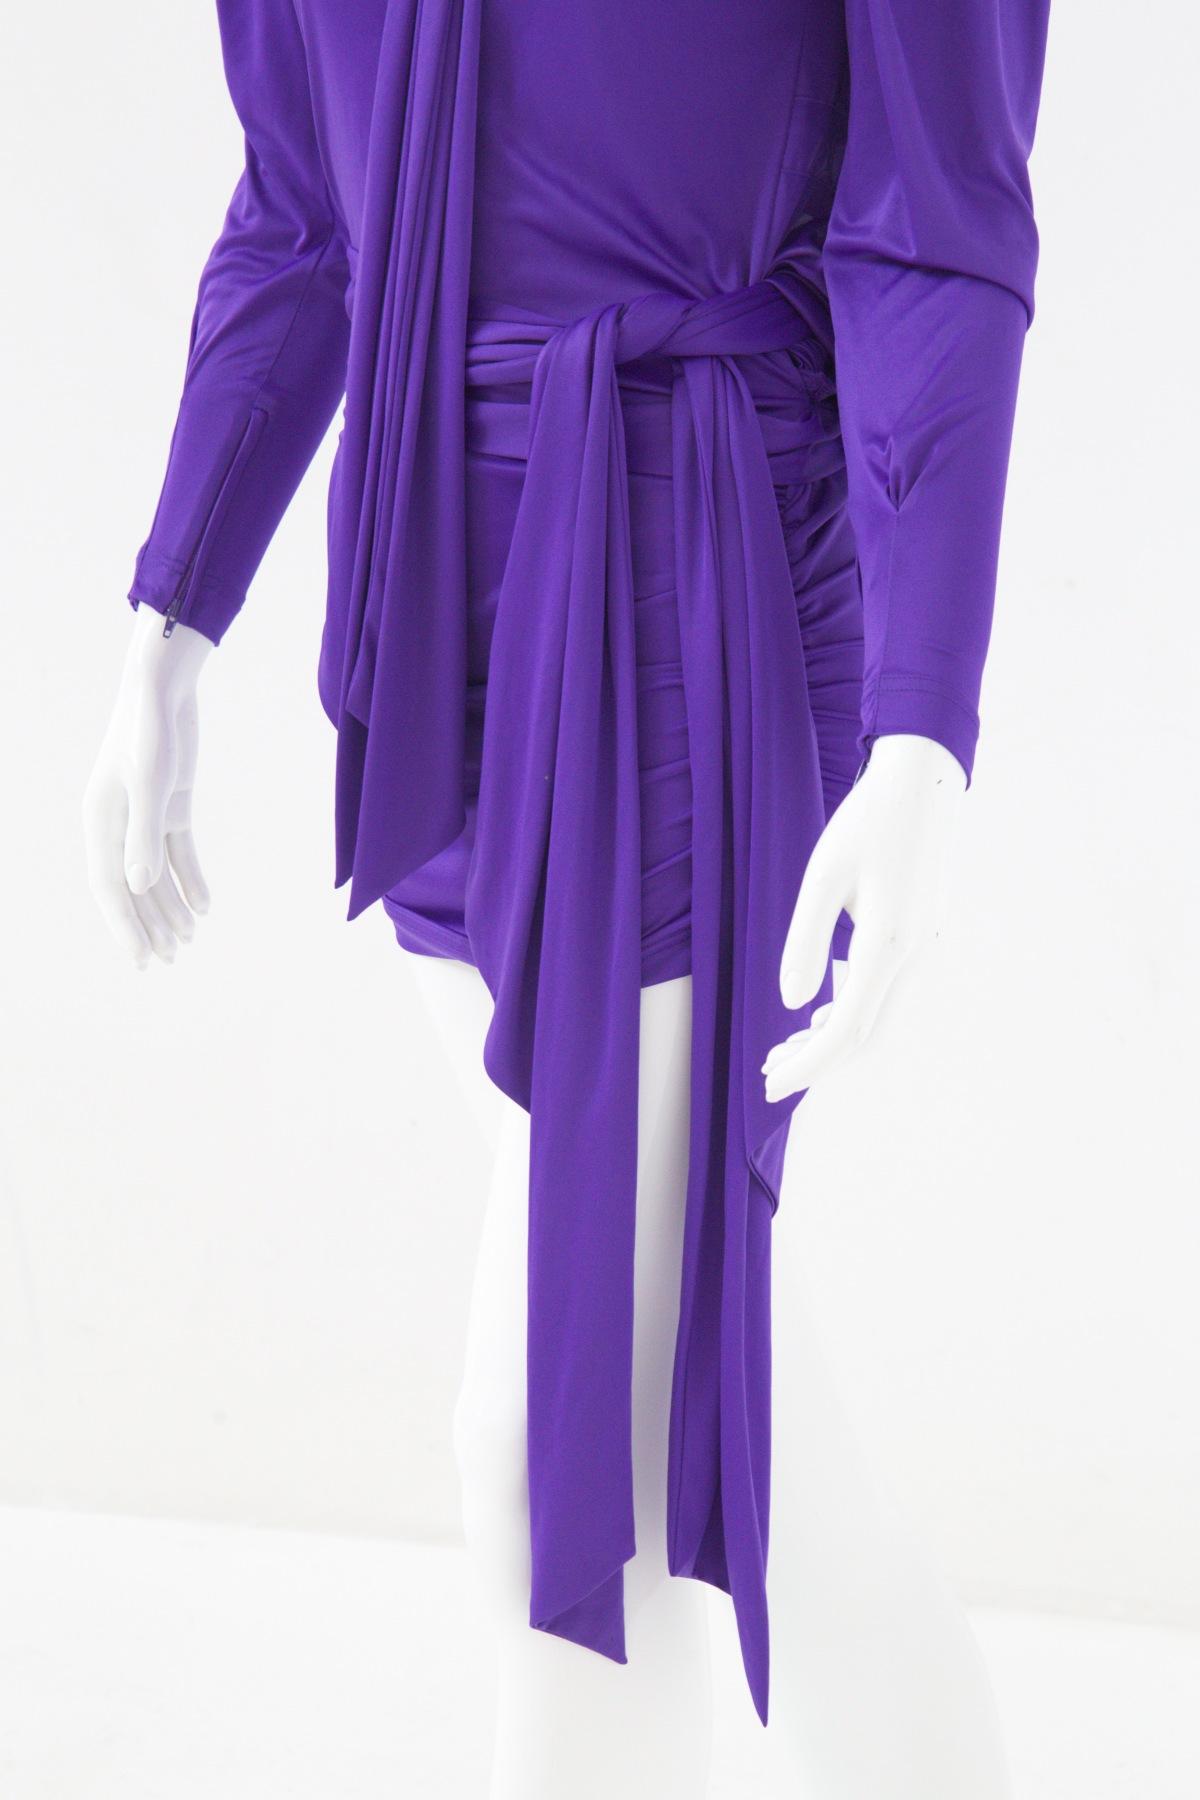 balenciaga purple dress